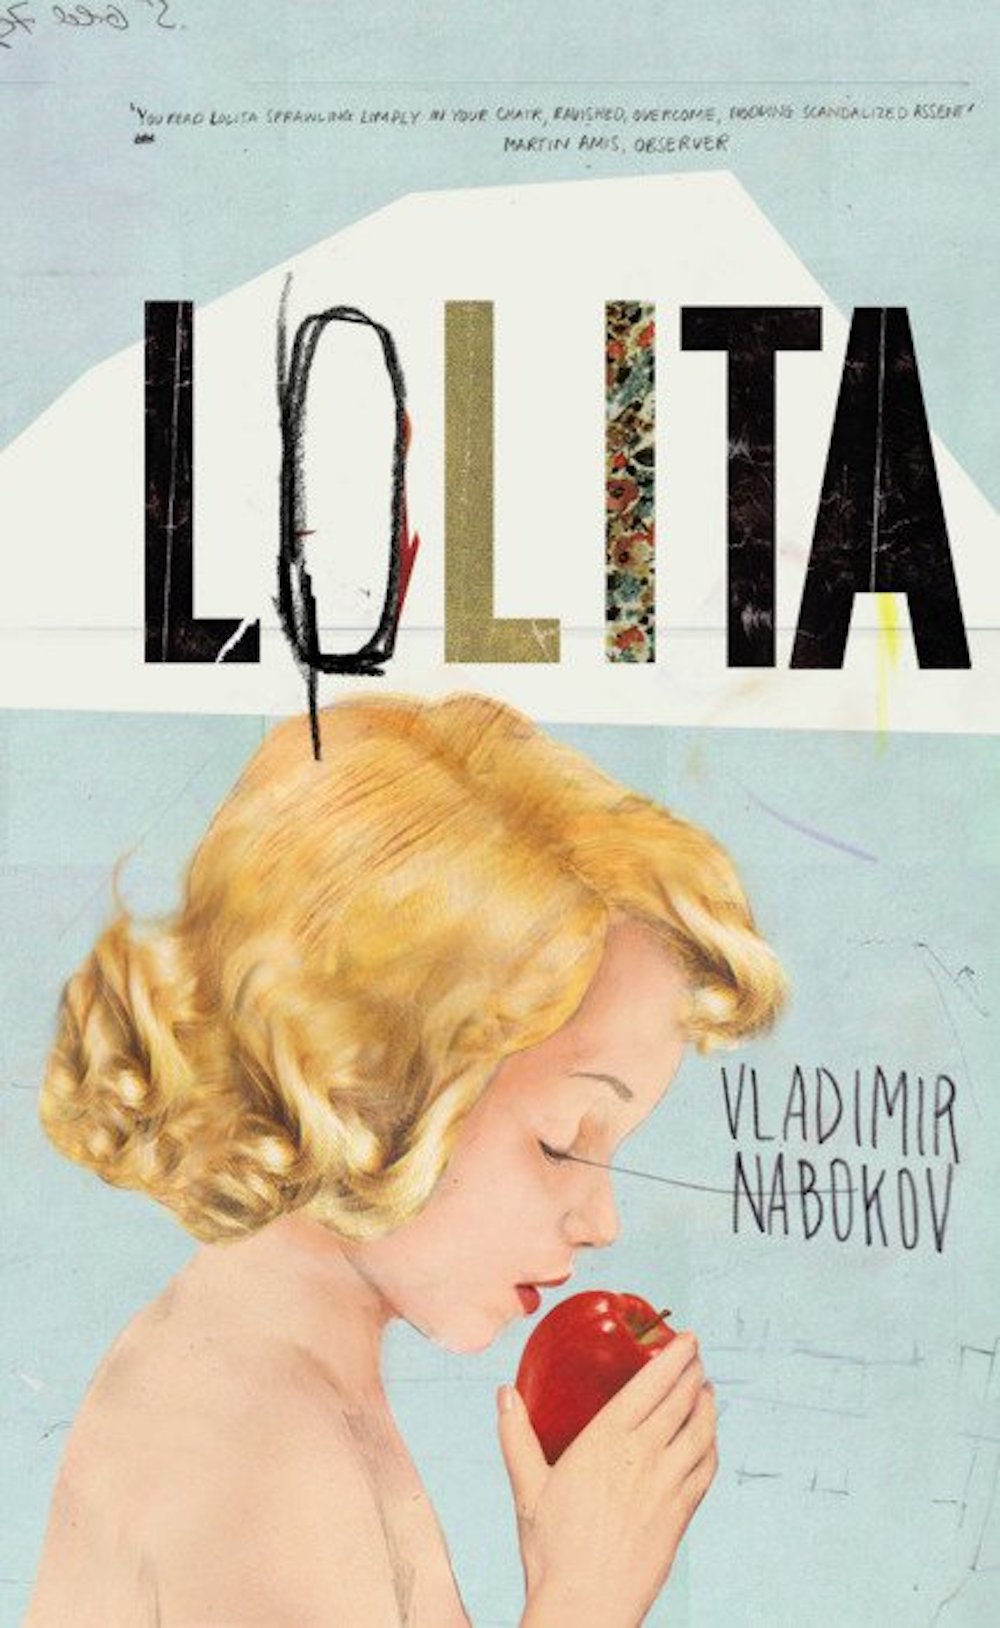 <em>Lolita</em> published by Penguin Essentials in 2011. Image: Vladimir Nabokov / Facebook